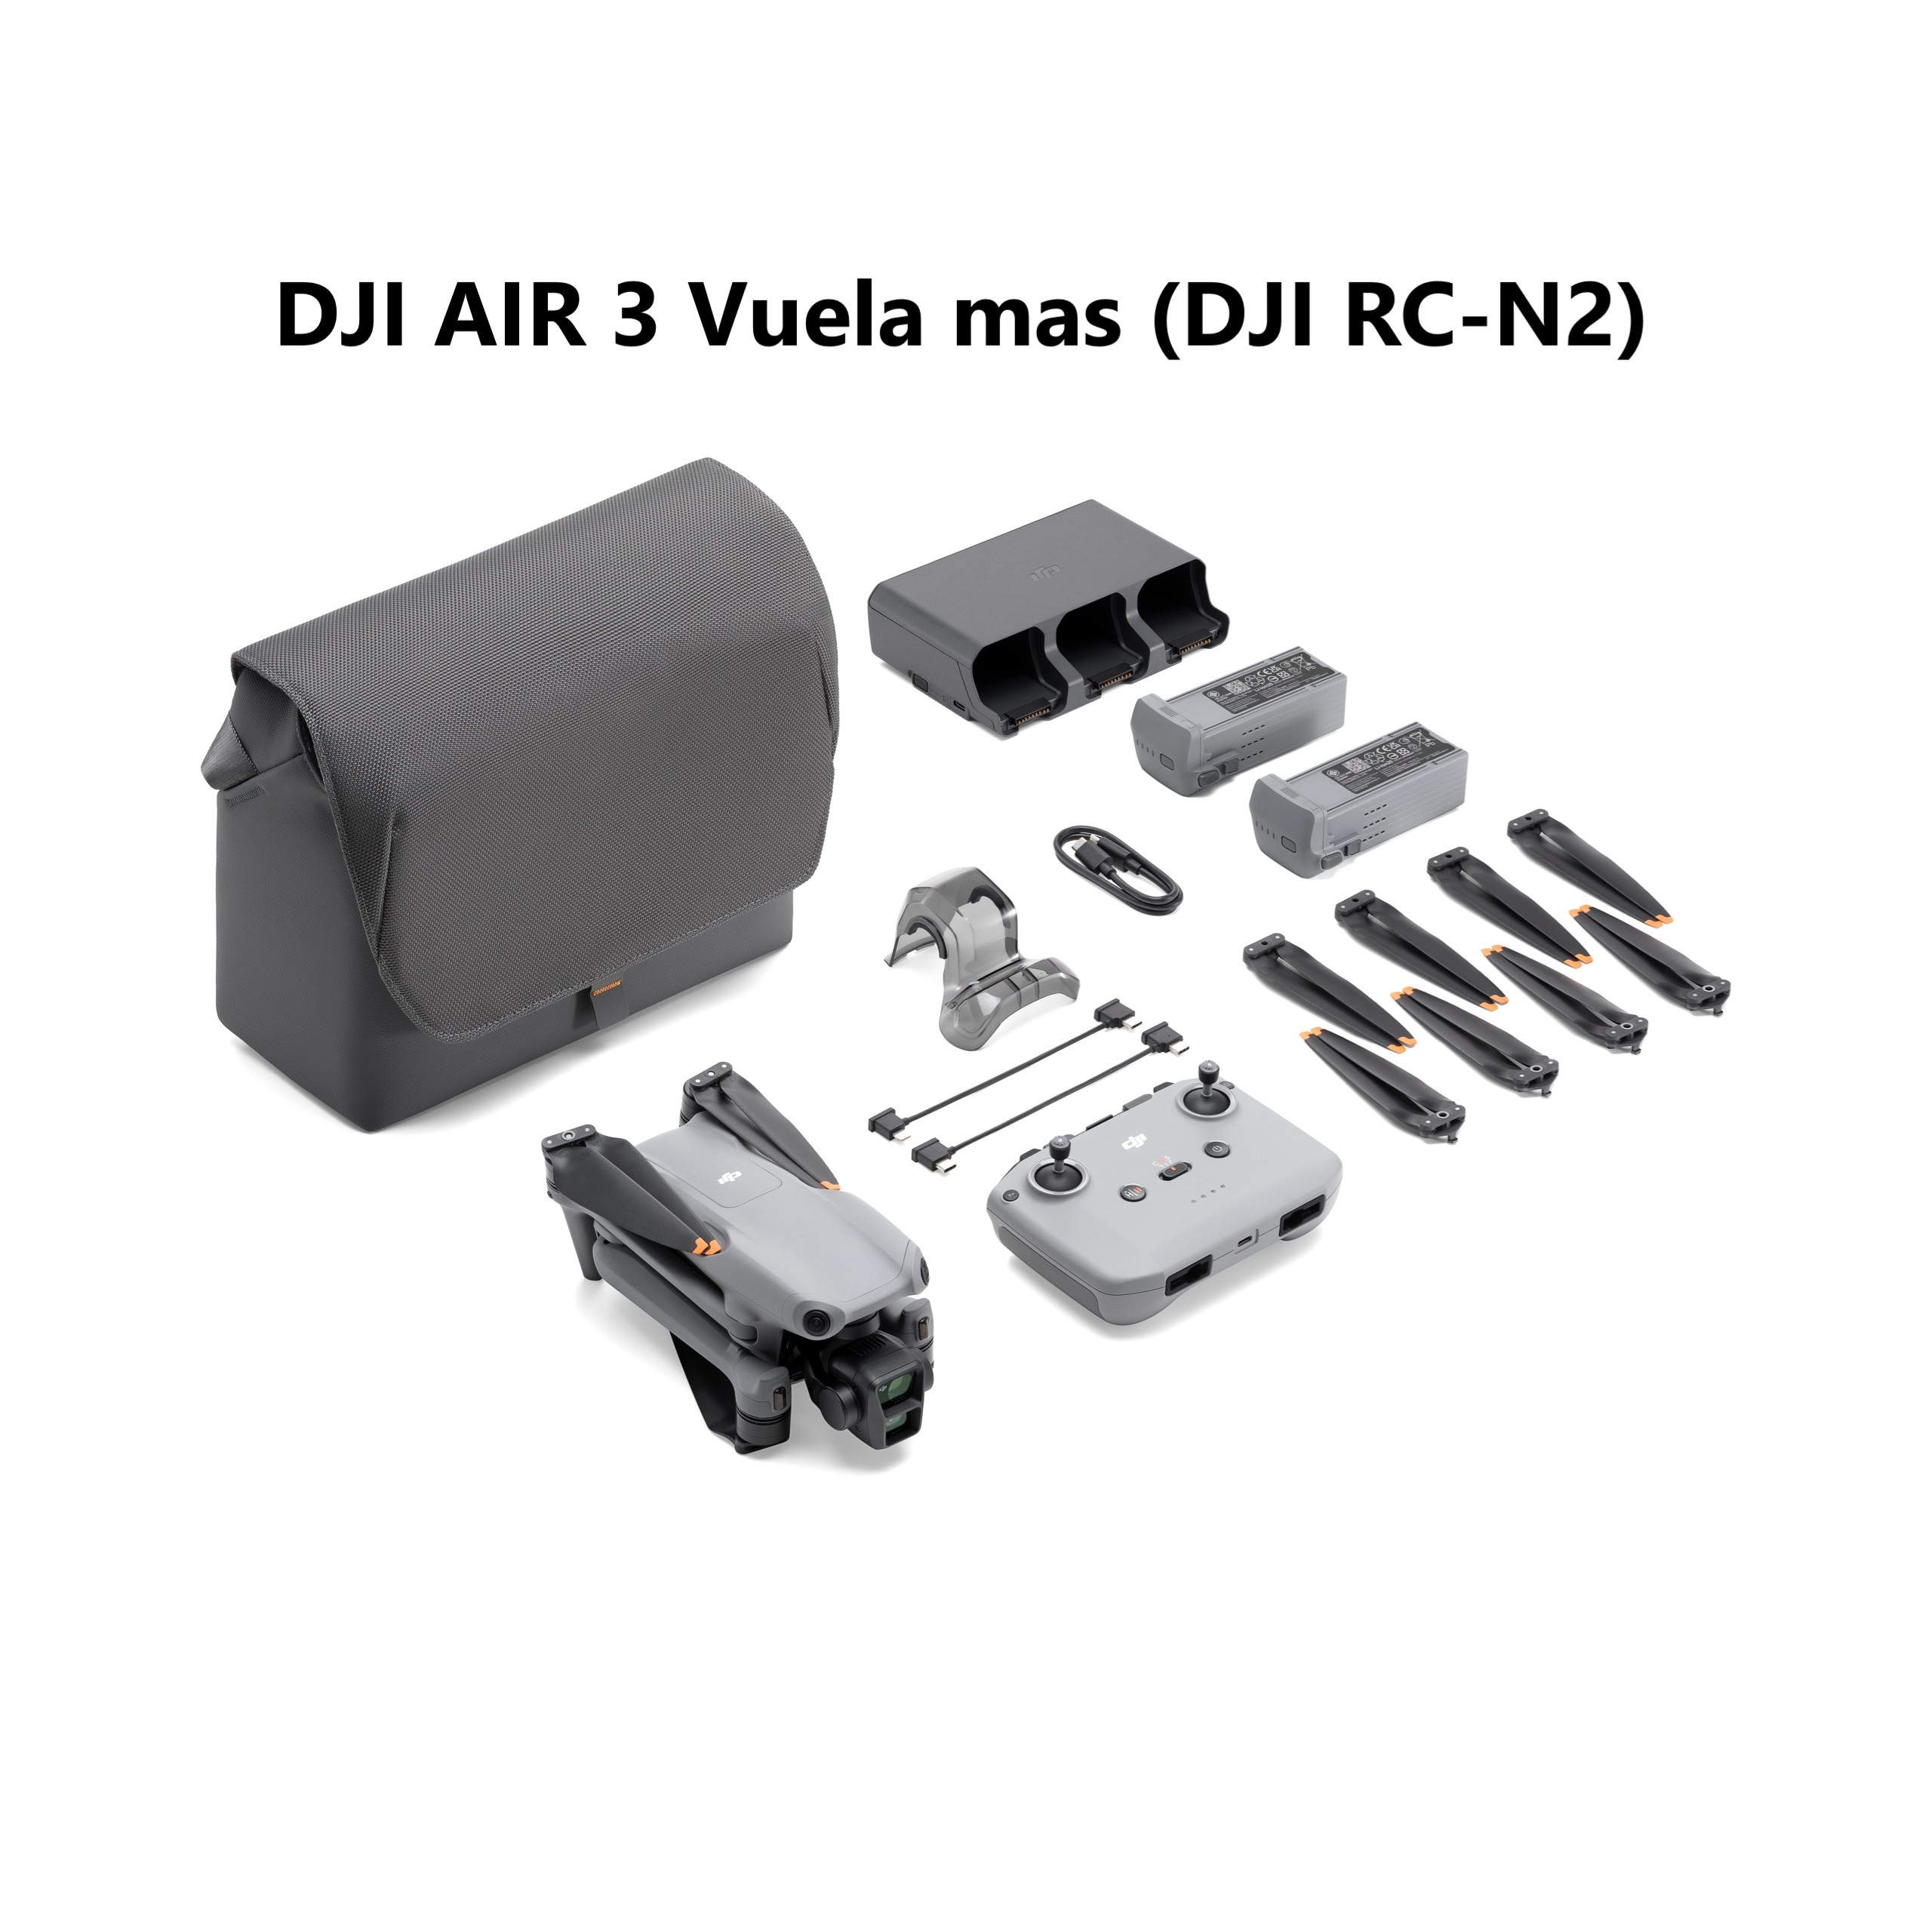 DJI AIR 3 Pack vuela mas (DJI RC-N2)